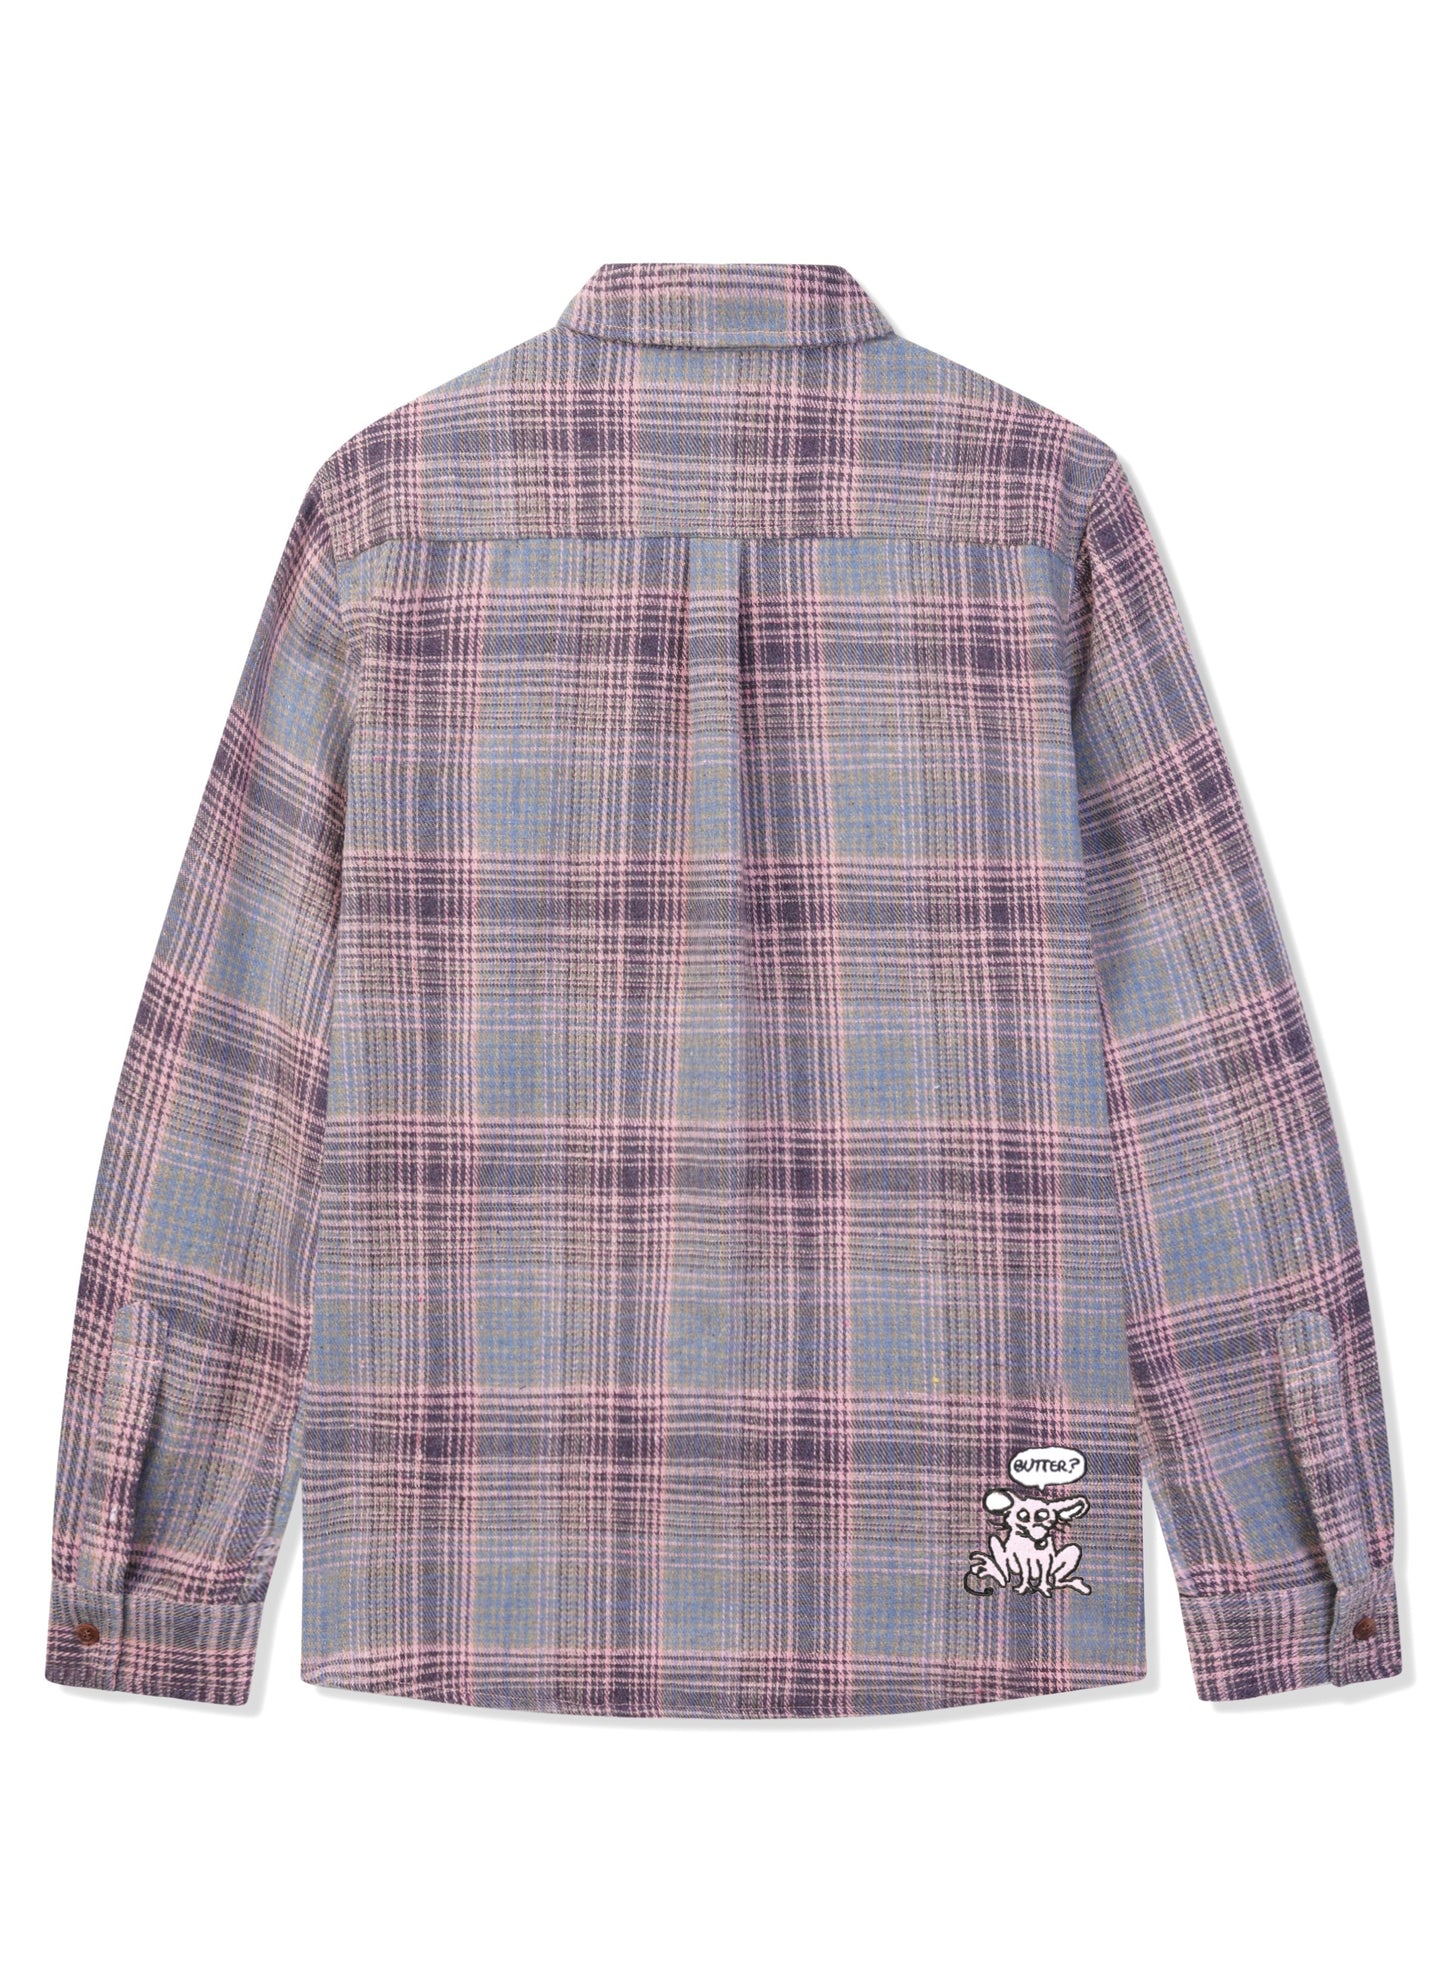 BUTTER GOODS Rodent Flannel Shirt - Pink/Grey  L/XL